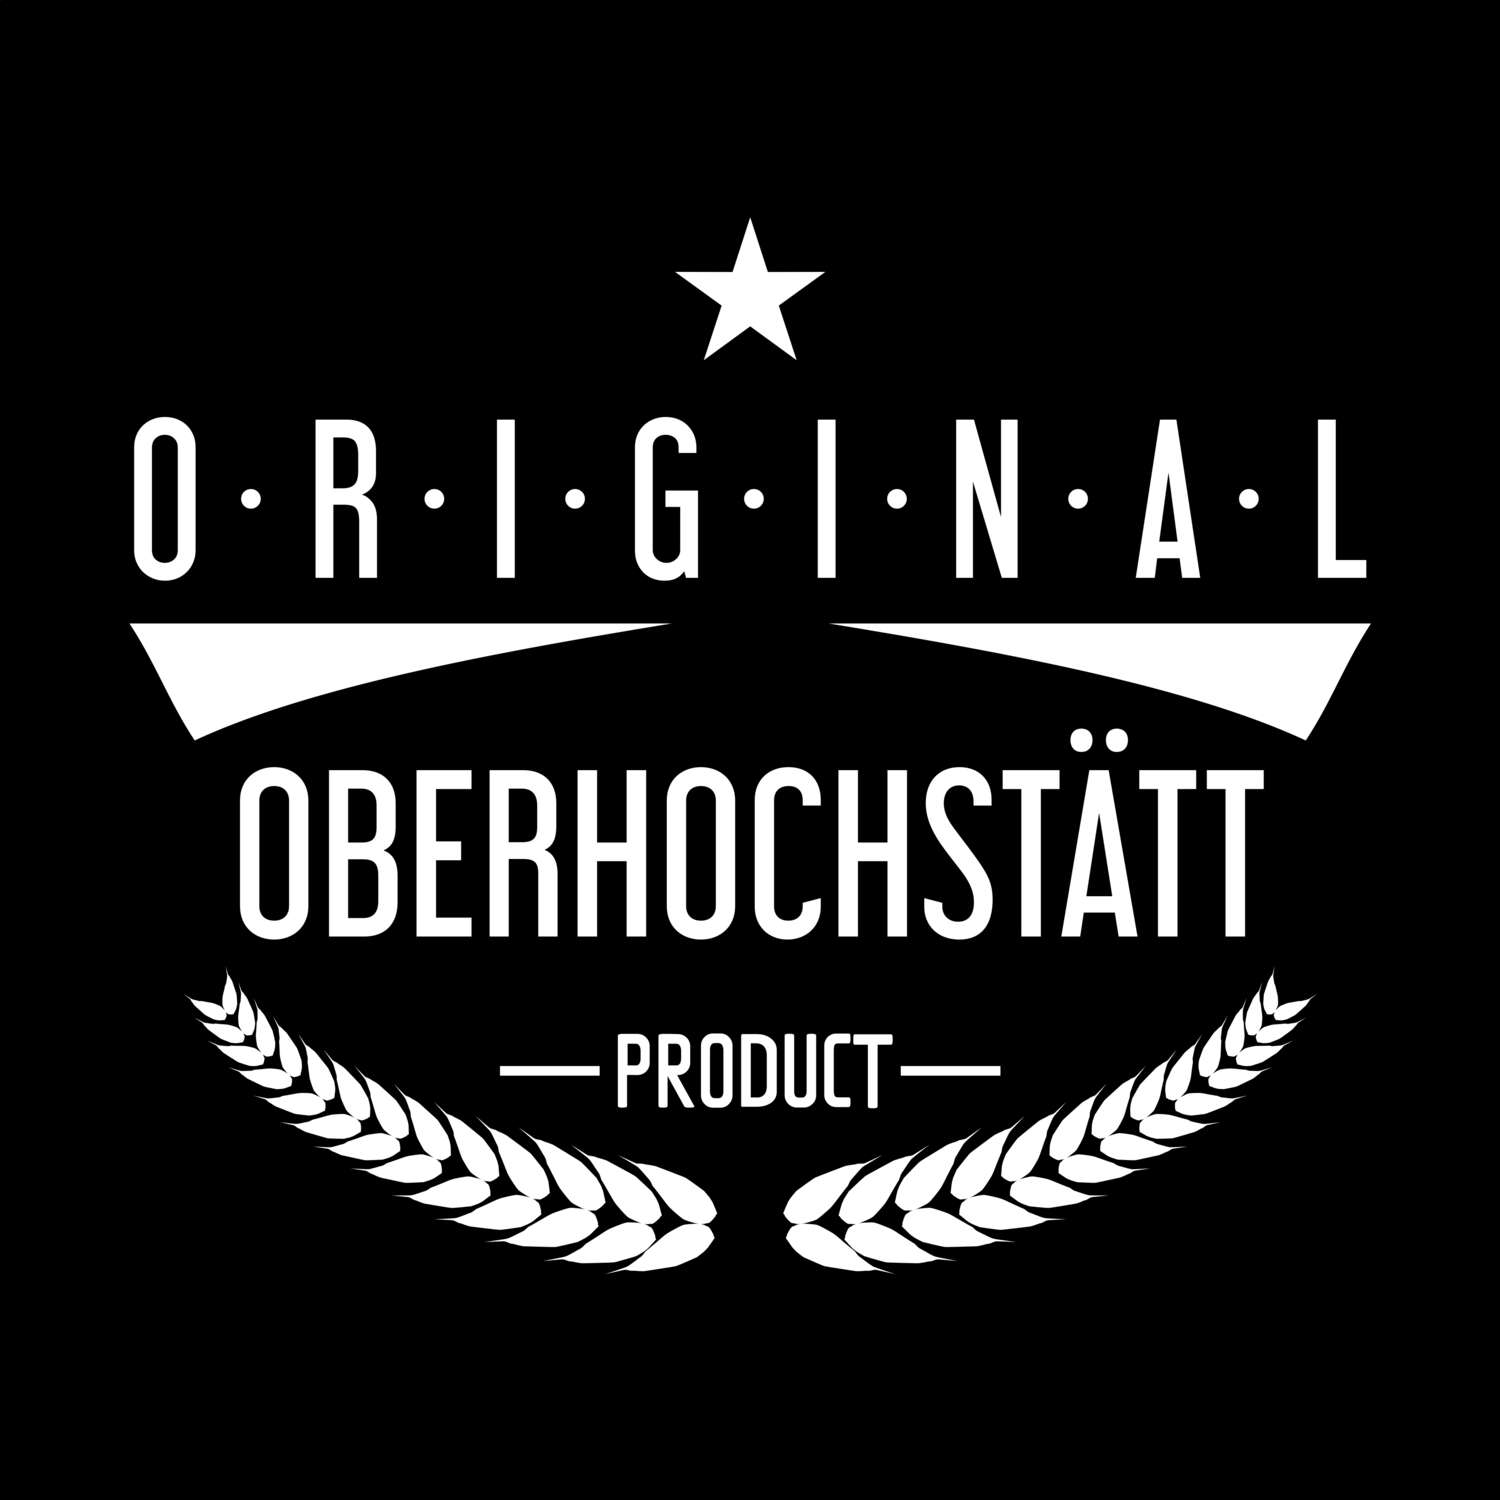 Oberhochstätt T-Shirt »Original Product«